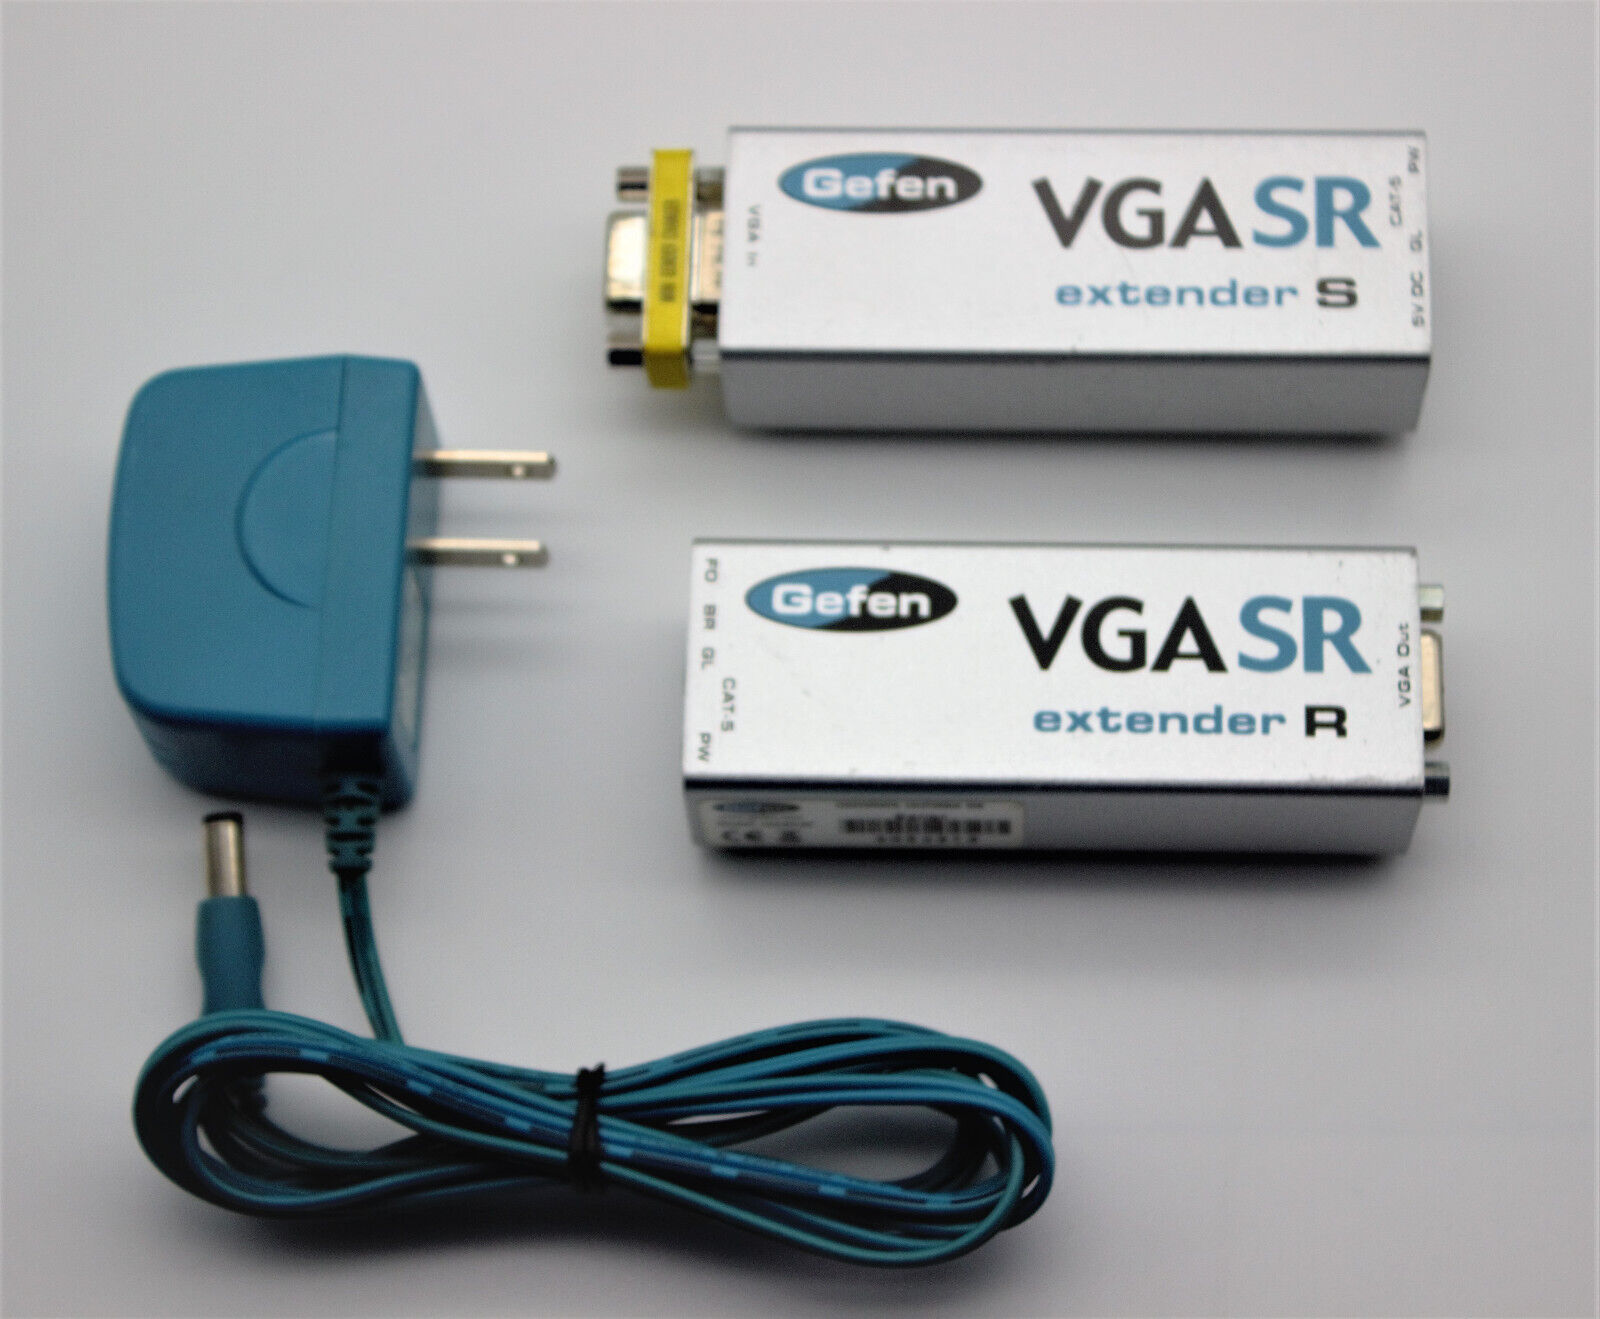 Gefen VGASR Extender S&R with Power Supply